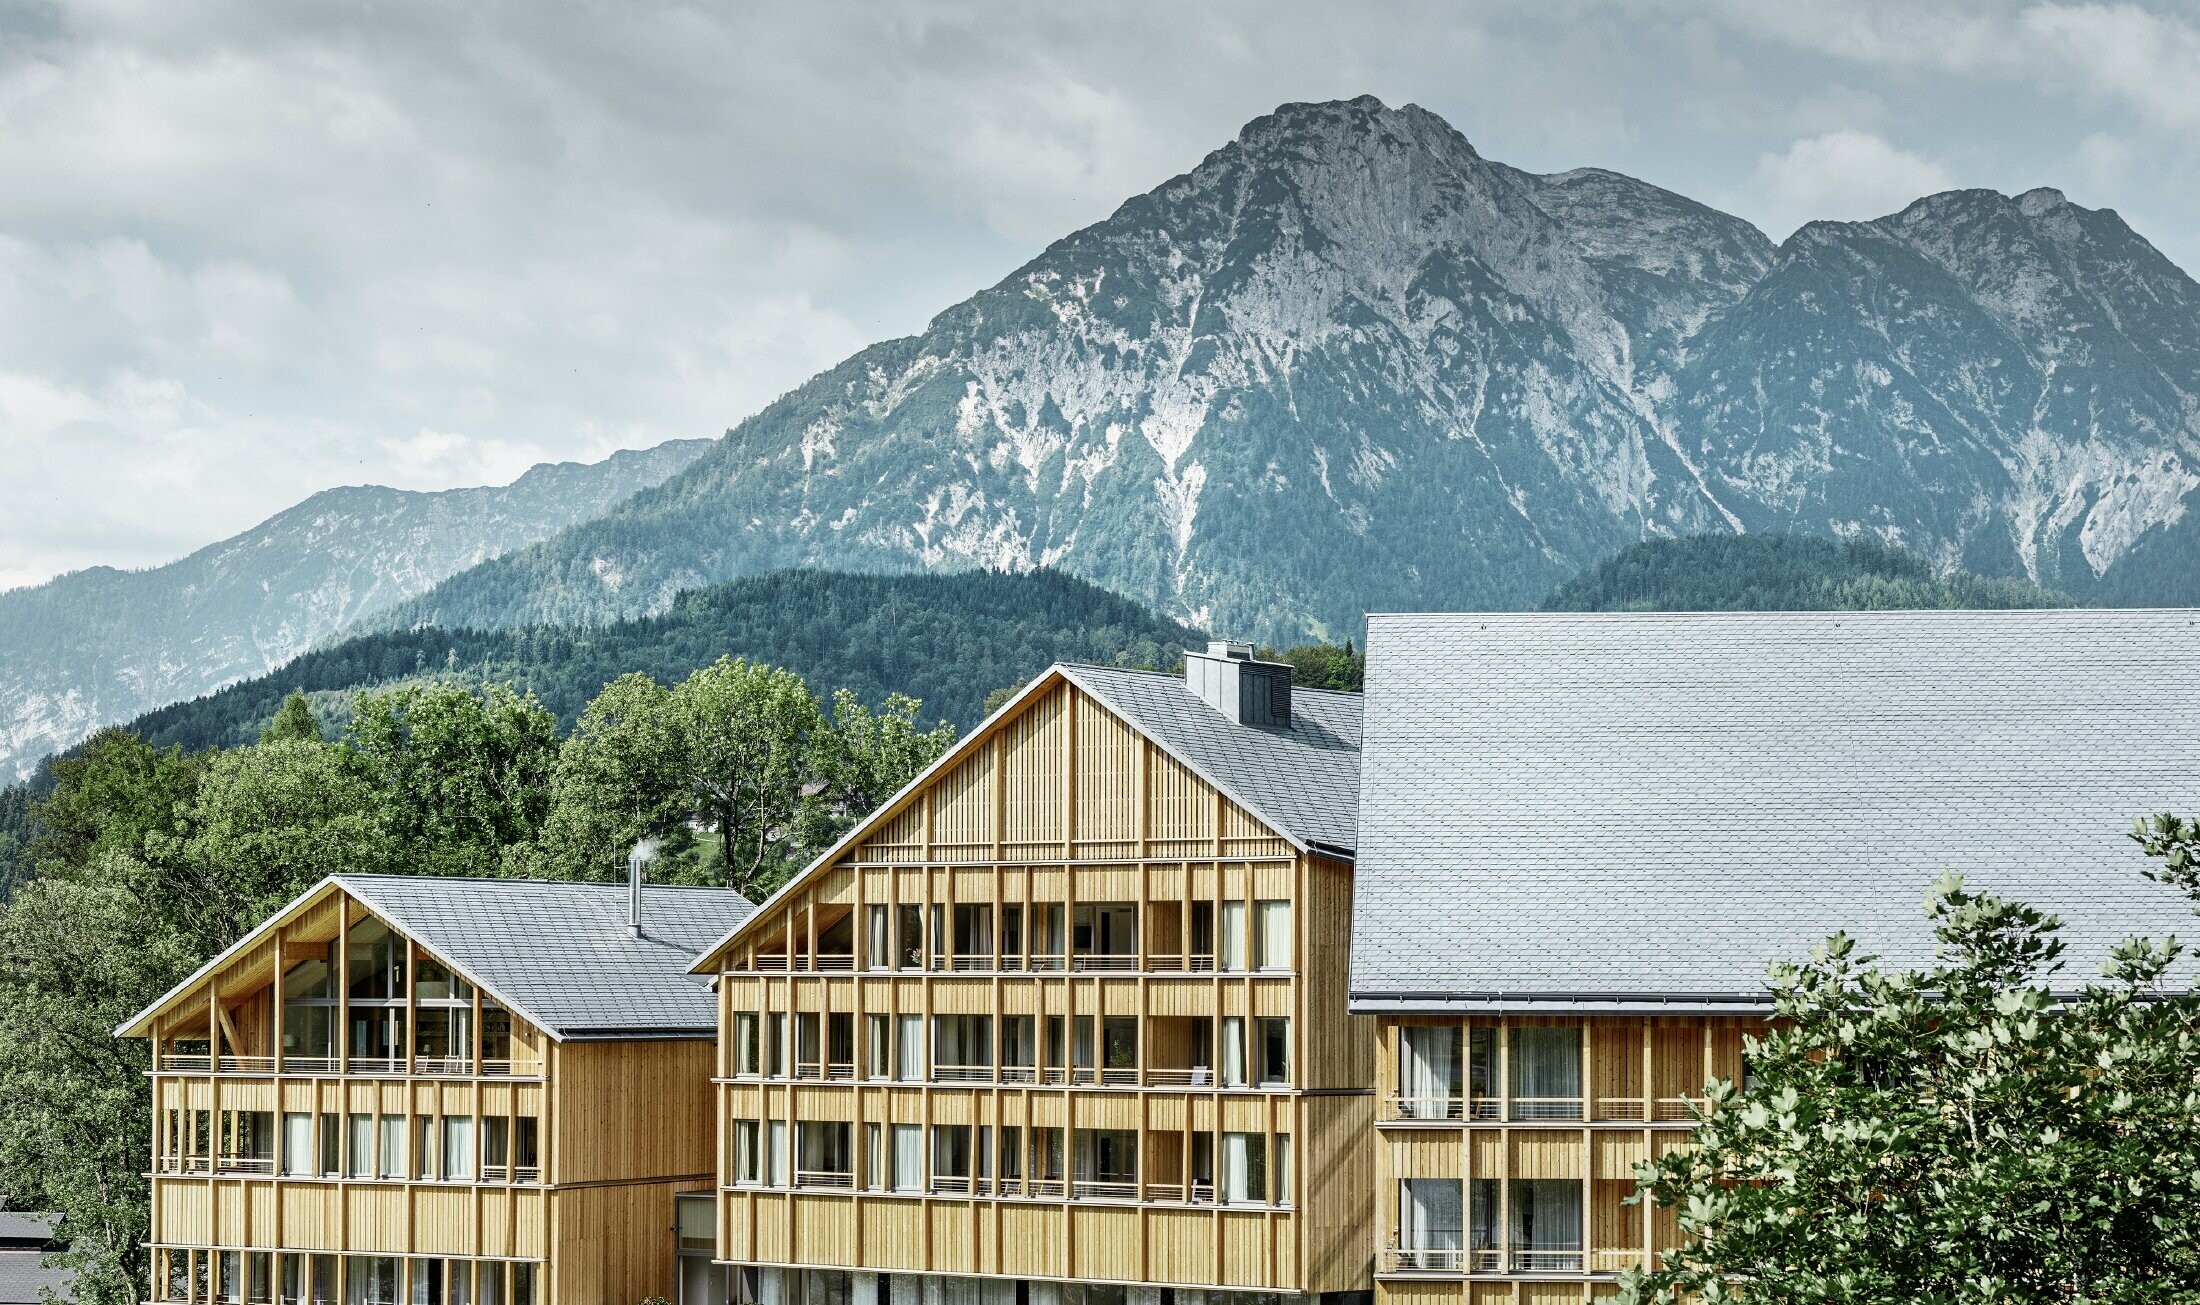 Hotel Vivamayr in Altaussee (Oostenrijk) met houten gevelbekleding en PREFA-dakschindels op het dak